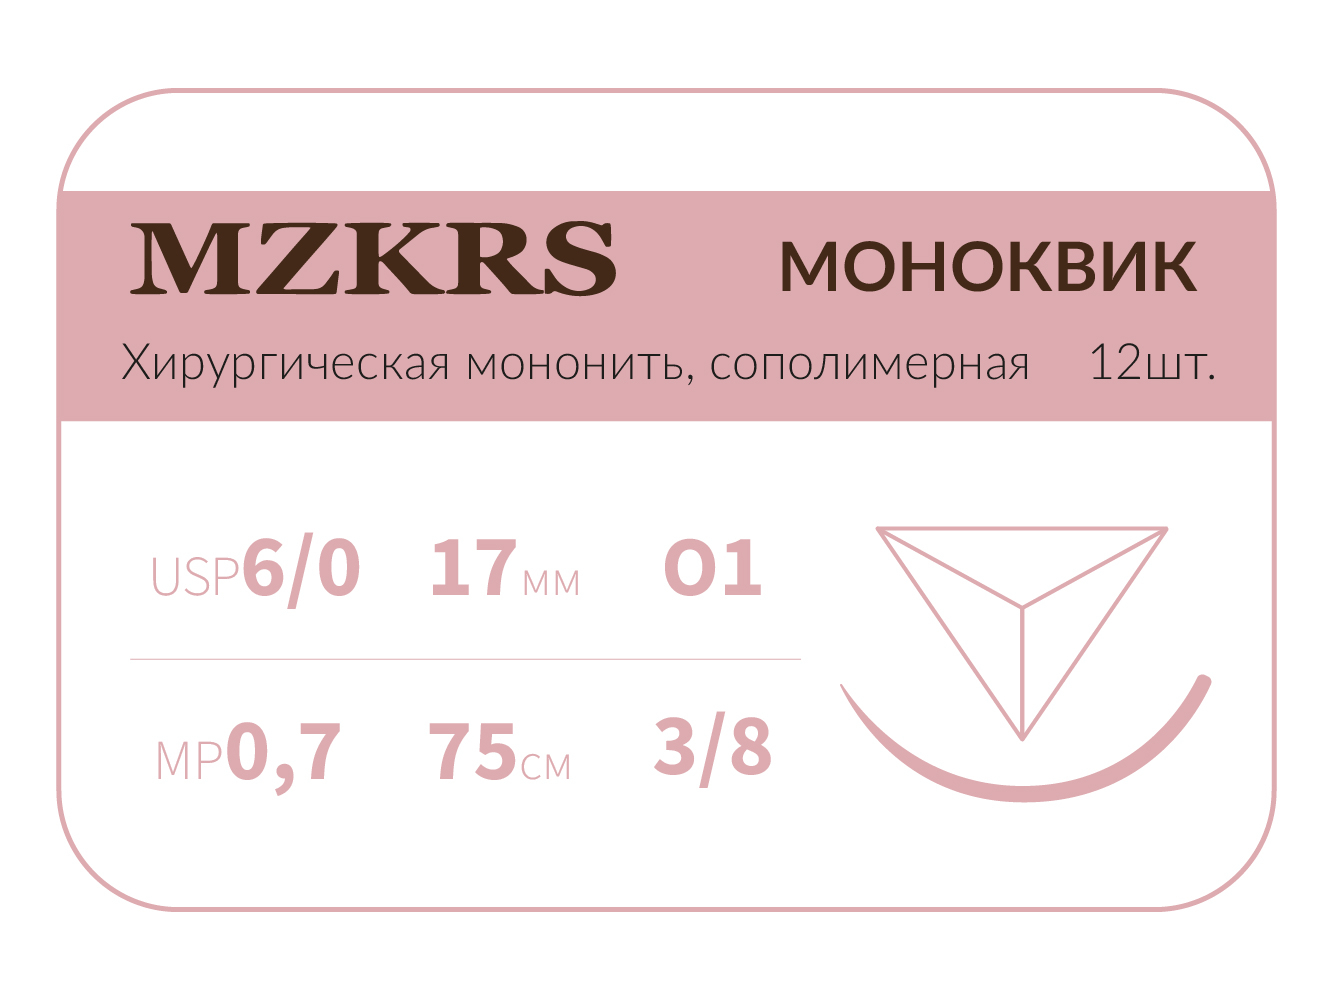 1738К1 Premium-6/0 (0,7)75 МОНК МОНОКВИК хирургическая мононить, сополимерная, MZKRS (Россия)